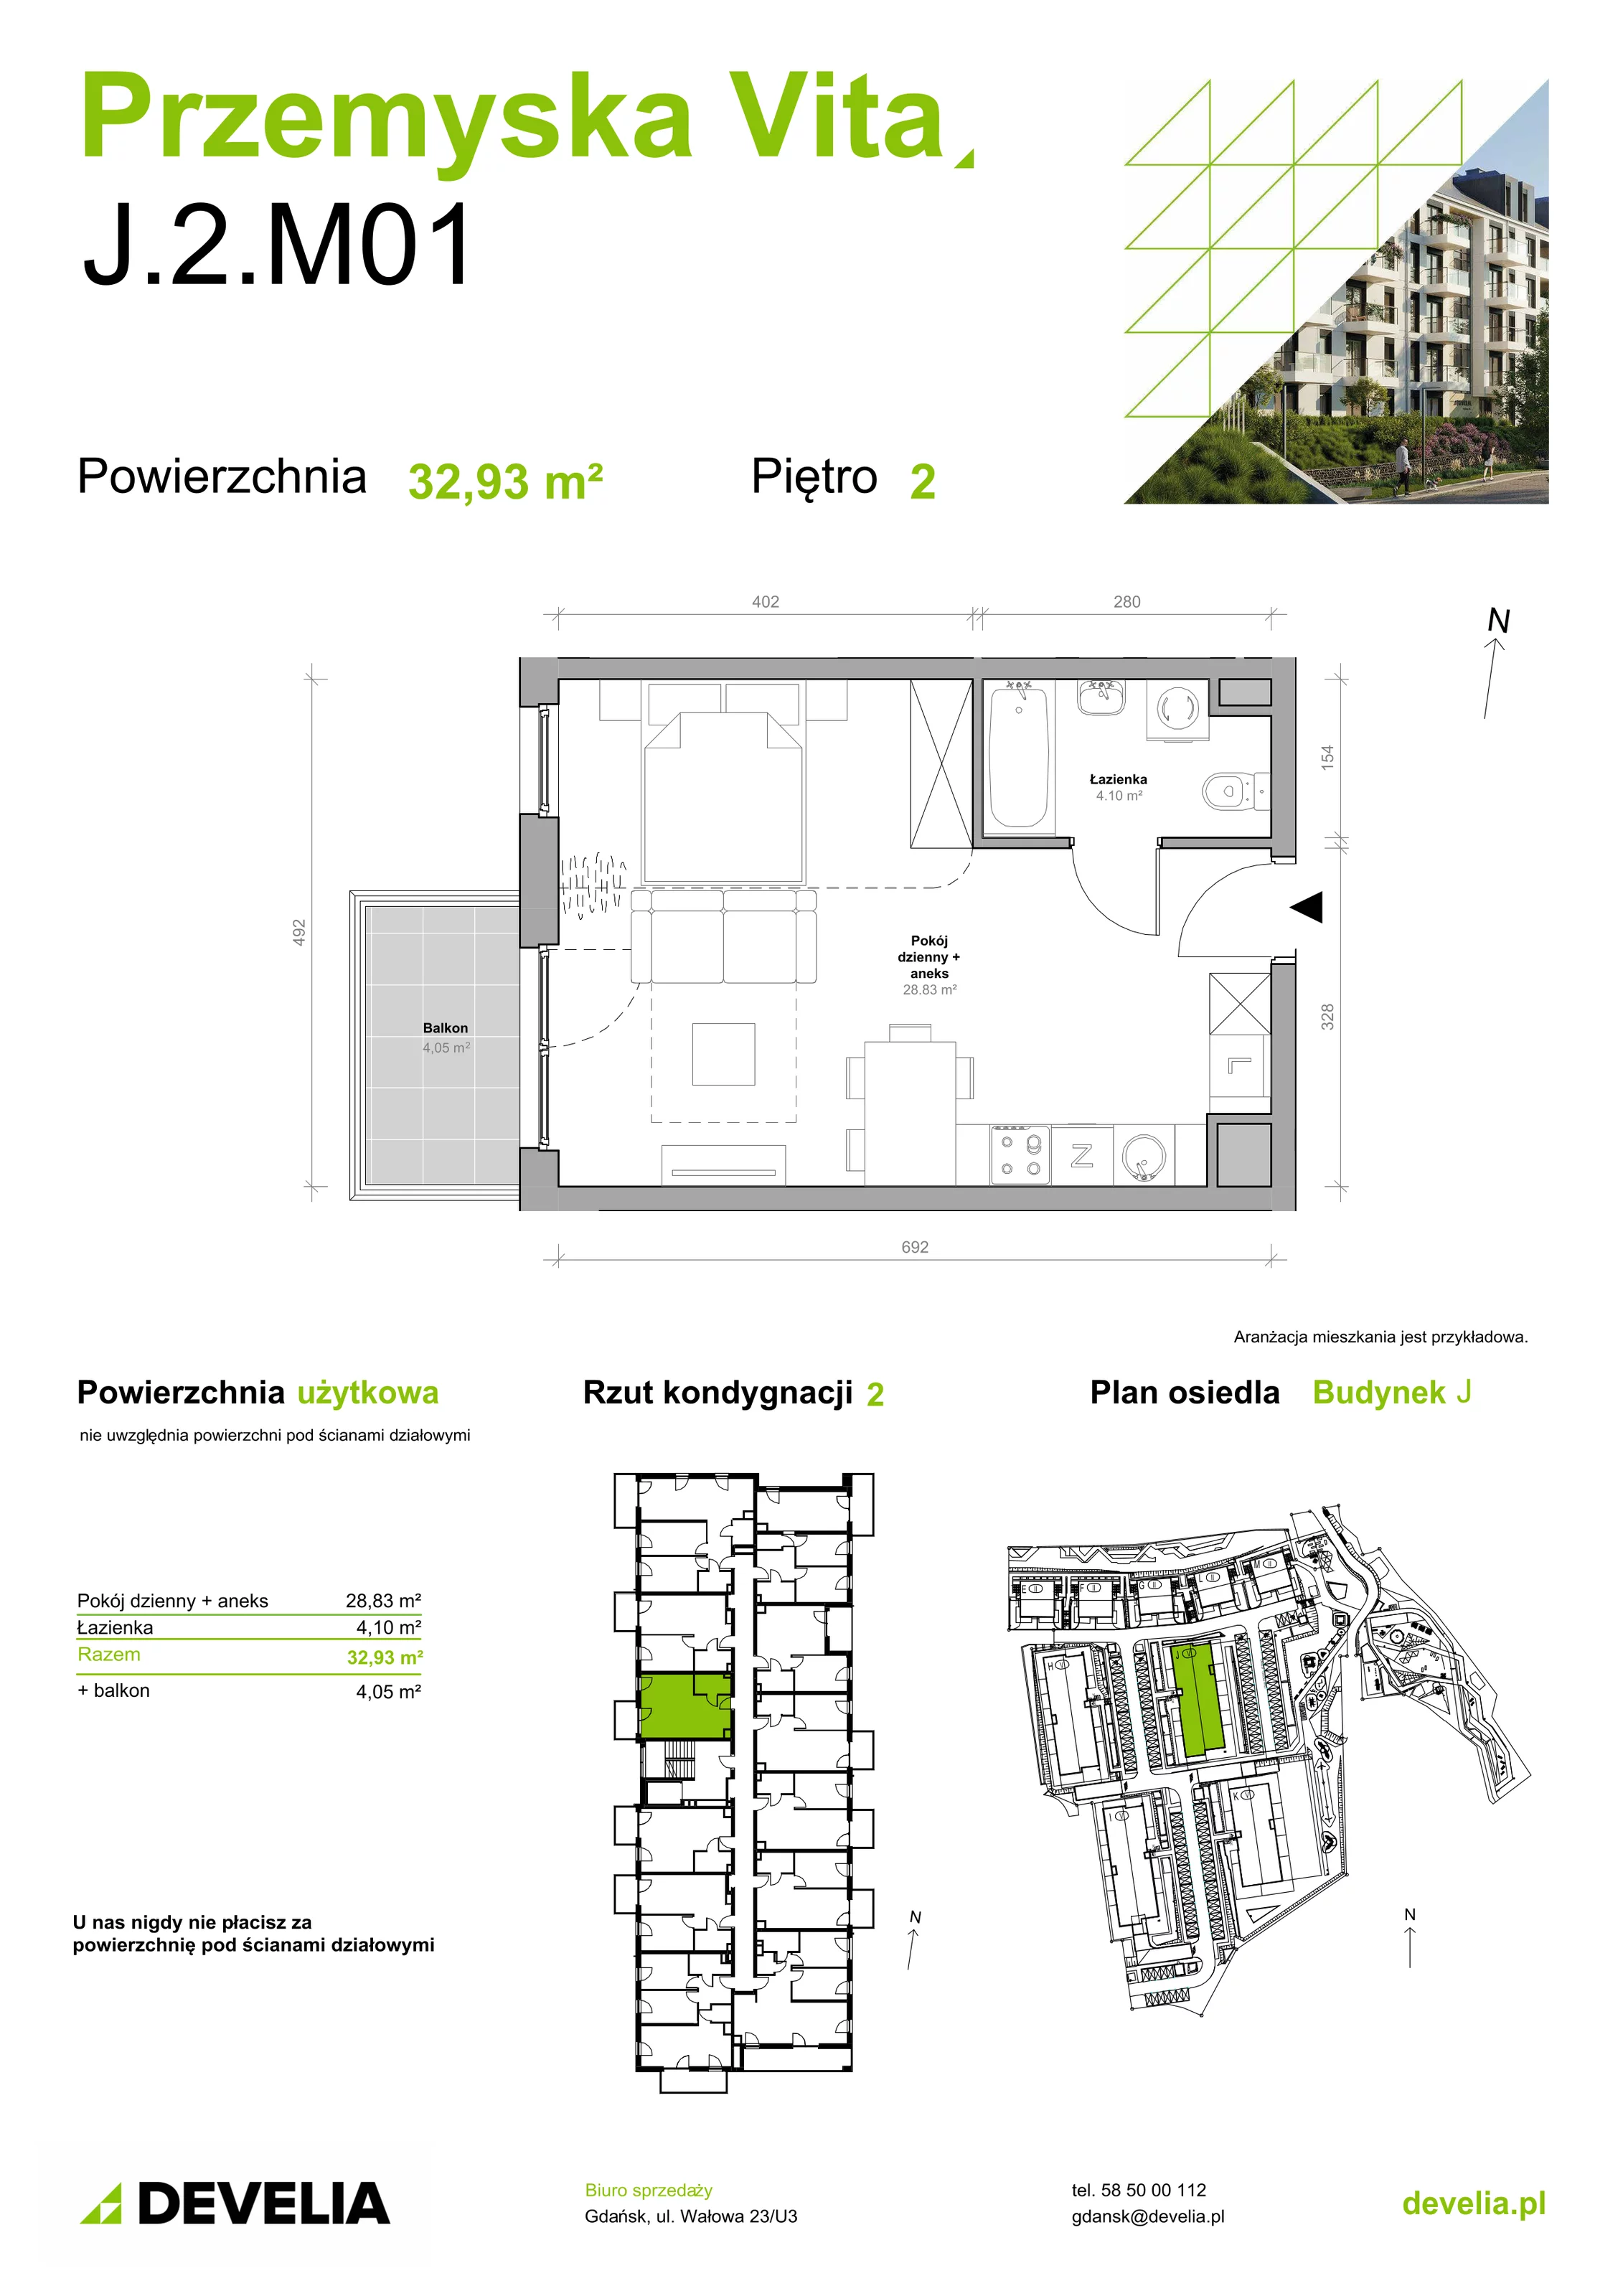 Mieszkanie 32,93 m², piętro 2, oferta nr J.2.M01, Przemyska Vita, Gdańsk, Ujeścisko-Łostowice, Ujeścisko, ul. Przemyska 37